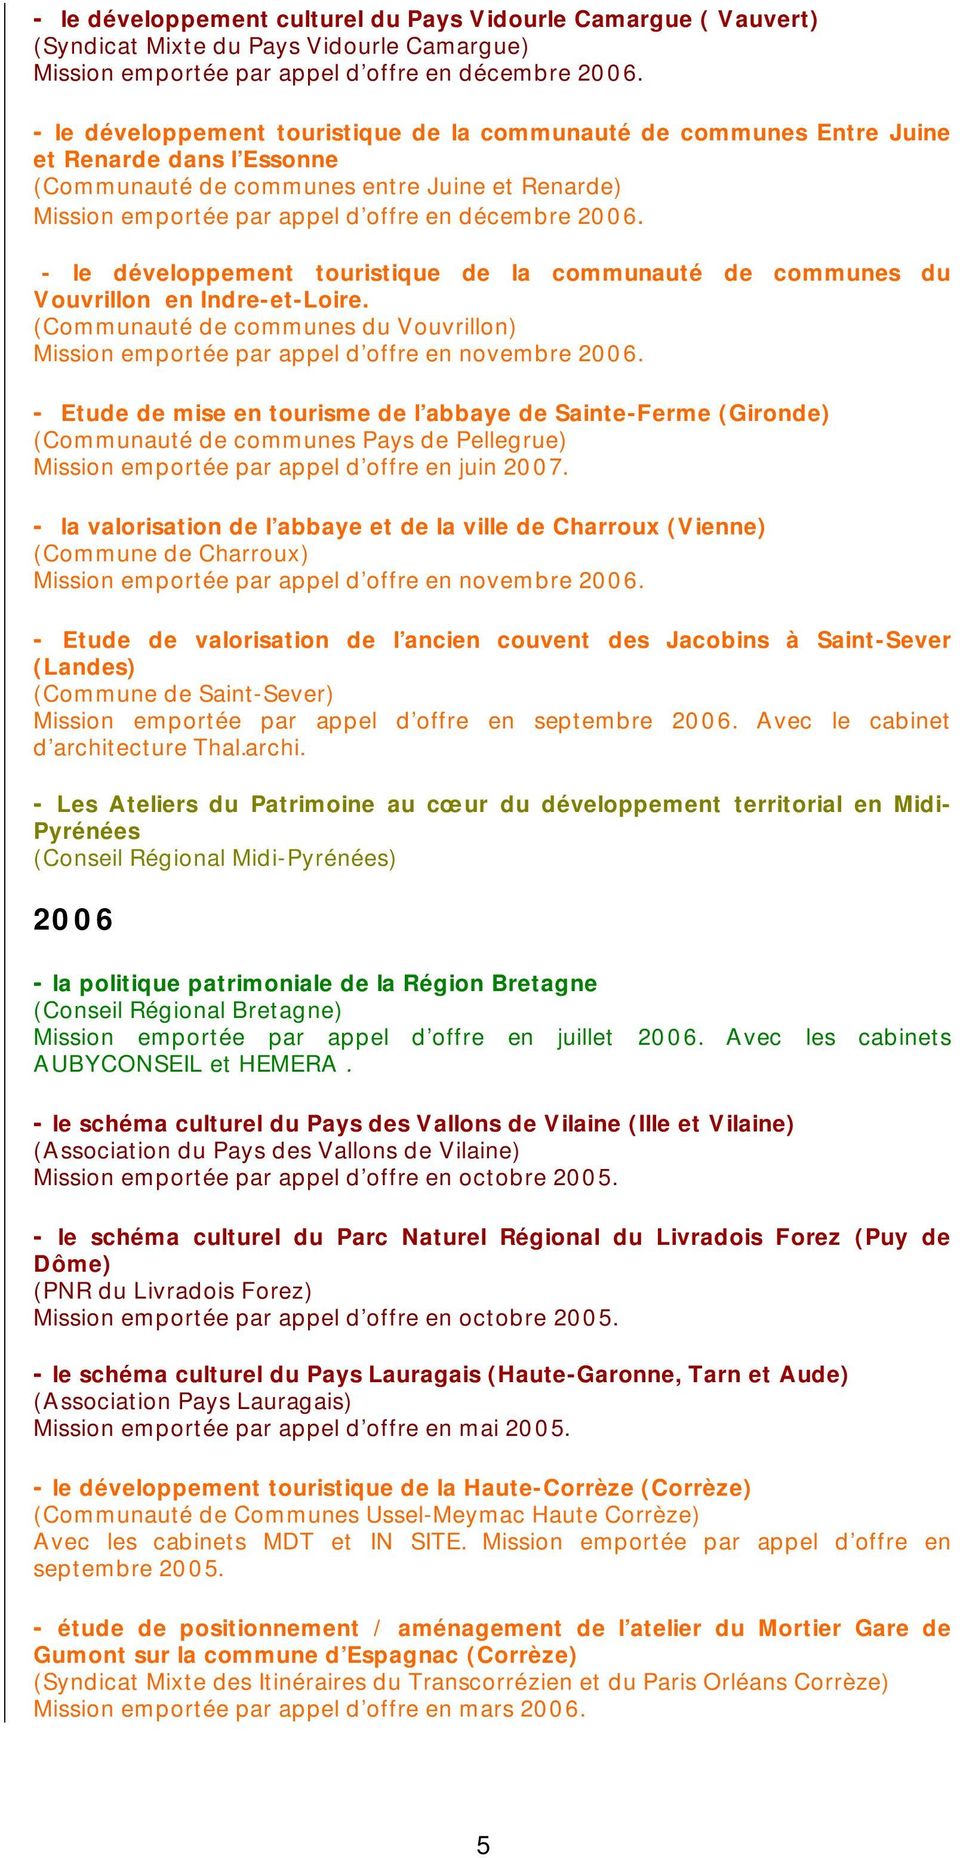 - le développement touristique de la communauté de communes du Vouvrillon en Indre-et-Loire. (Communauté de communes du Vouvrillon) Mission emportée par appel d offre en novembre 2006.